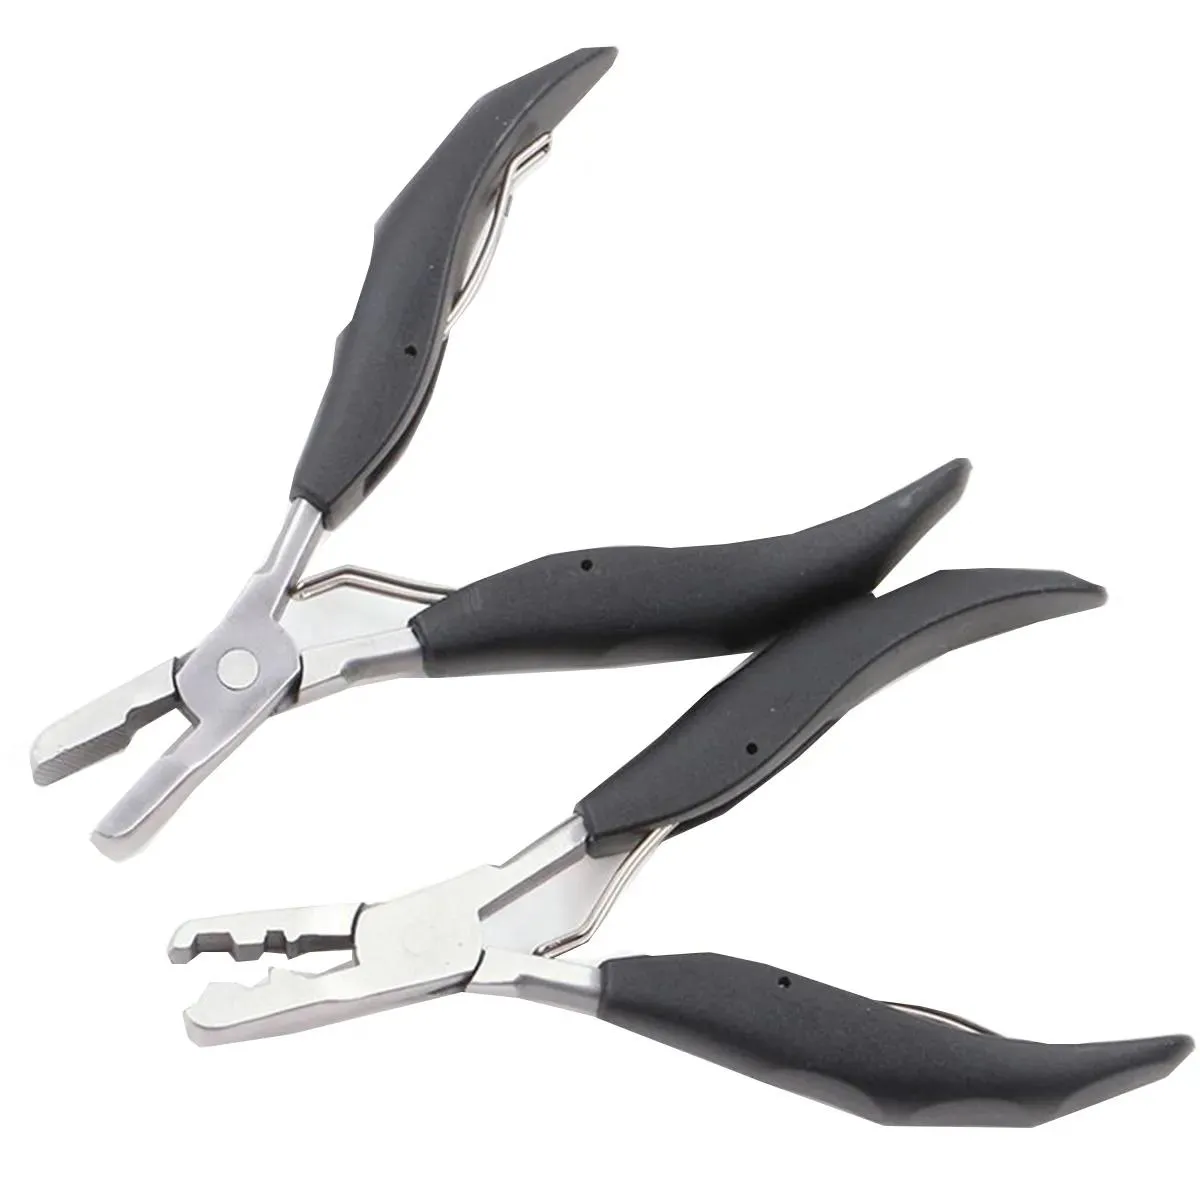 Tools 1PC Stainless Steel Hair Pliers MultiFunctional Keratin PreBonded Hair Pliers Black Handle Hair Extension Tool